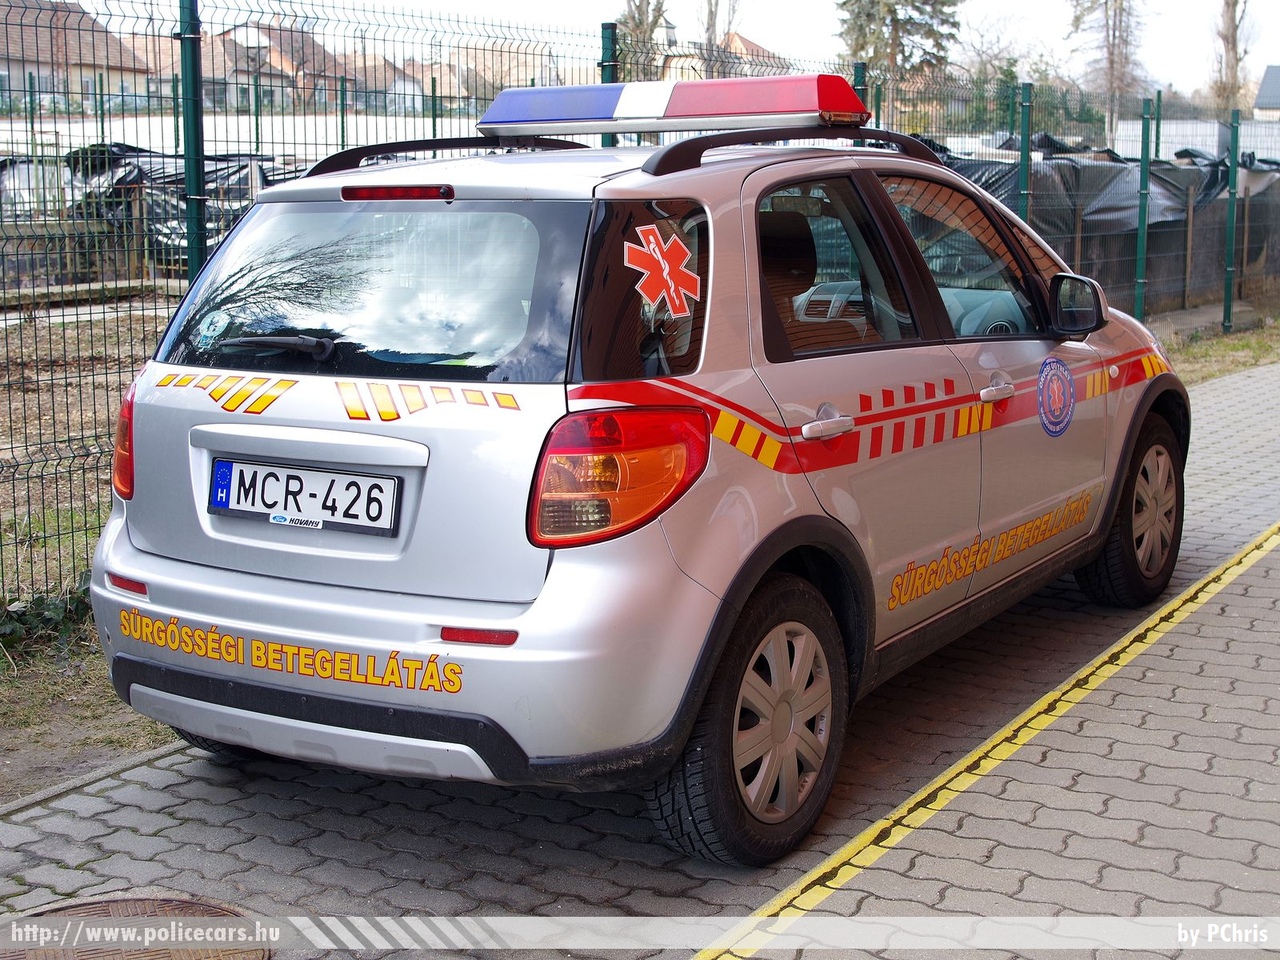 Suzuki SX4, orvosi ügyelet, Kistarcsa, Országos Orvosi Ügyelet Nonprofit Kft., fotó: PChris
Keywords: mentő magyar Magyarország mentőautó ambulance Hungary hungarian MCR-426